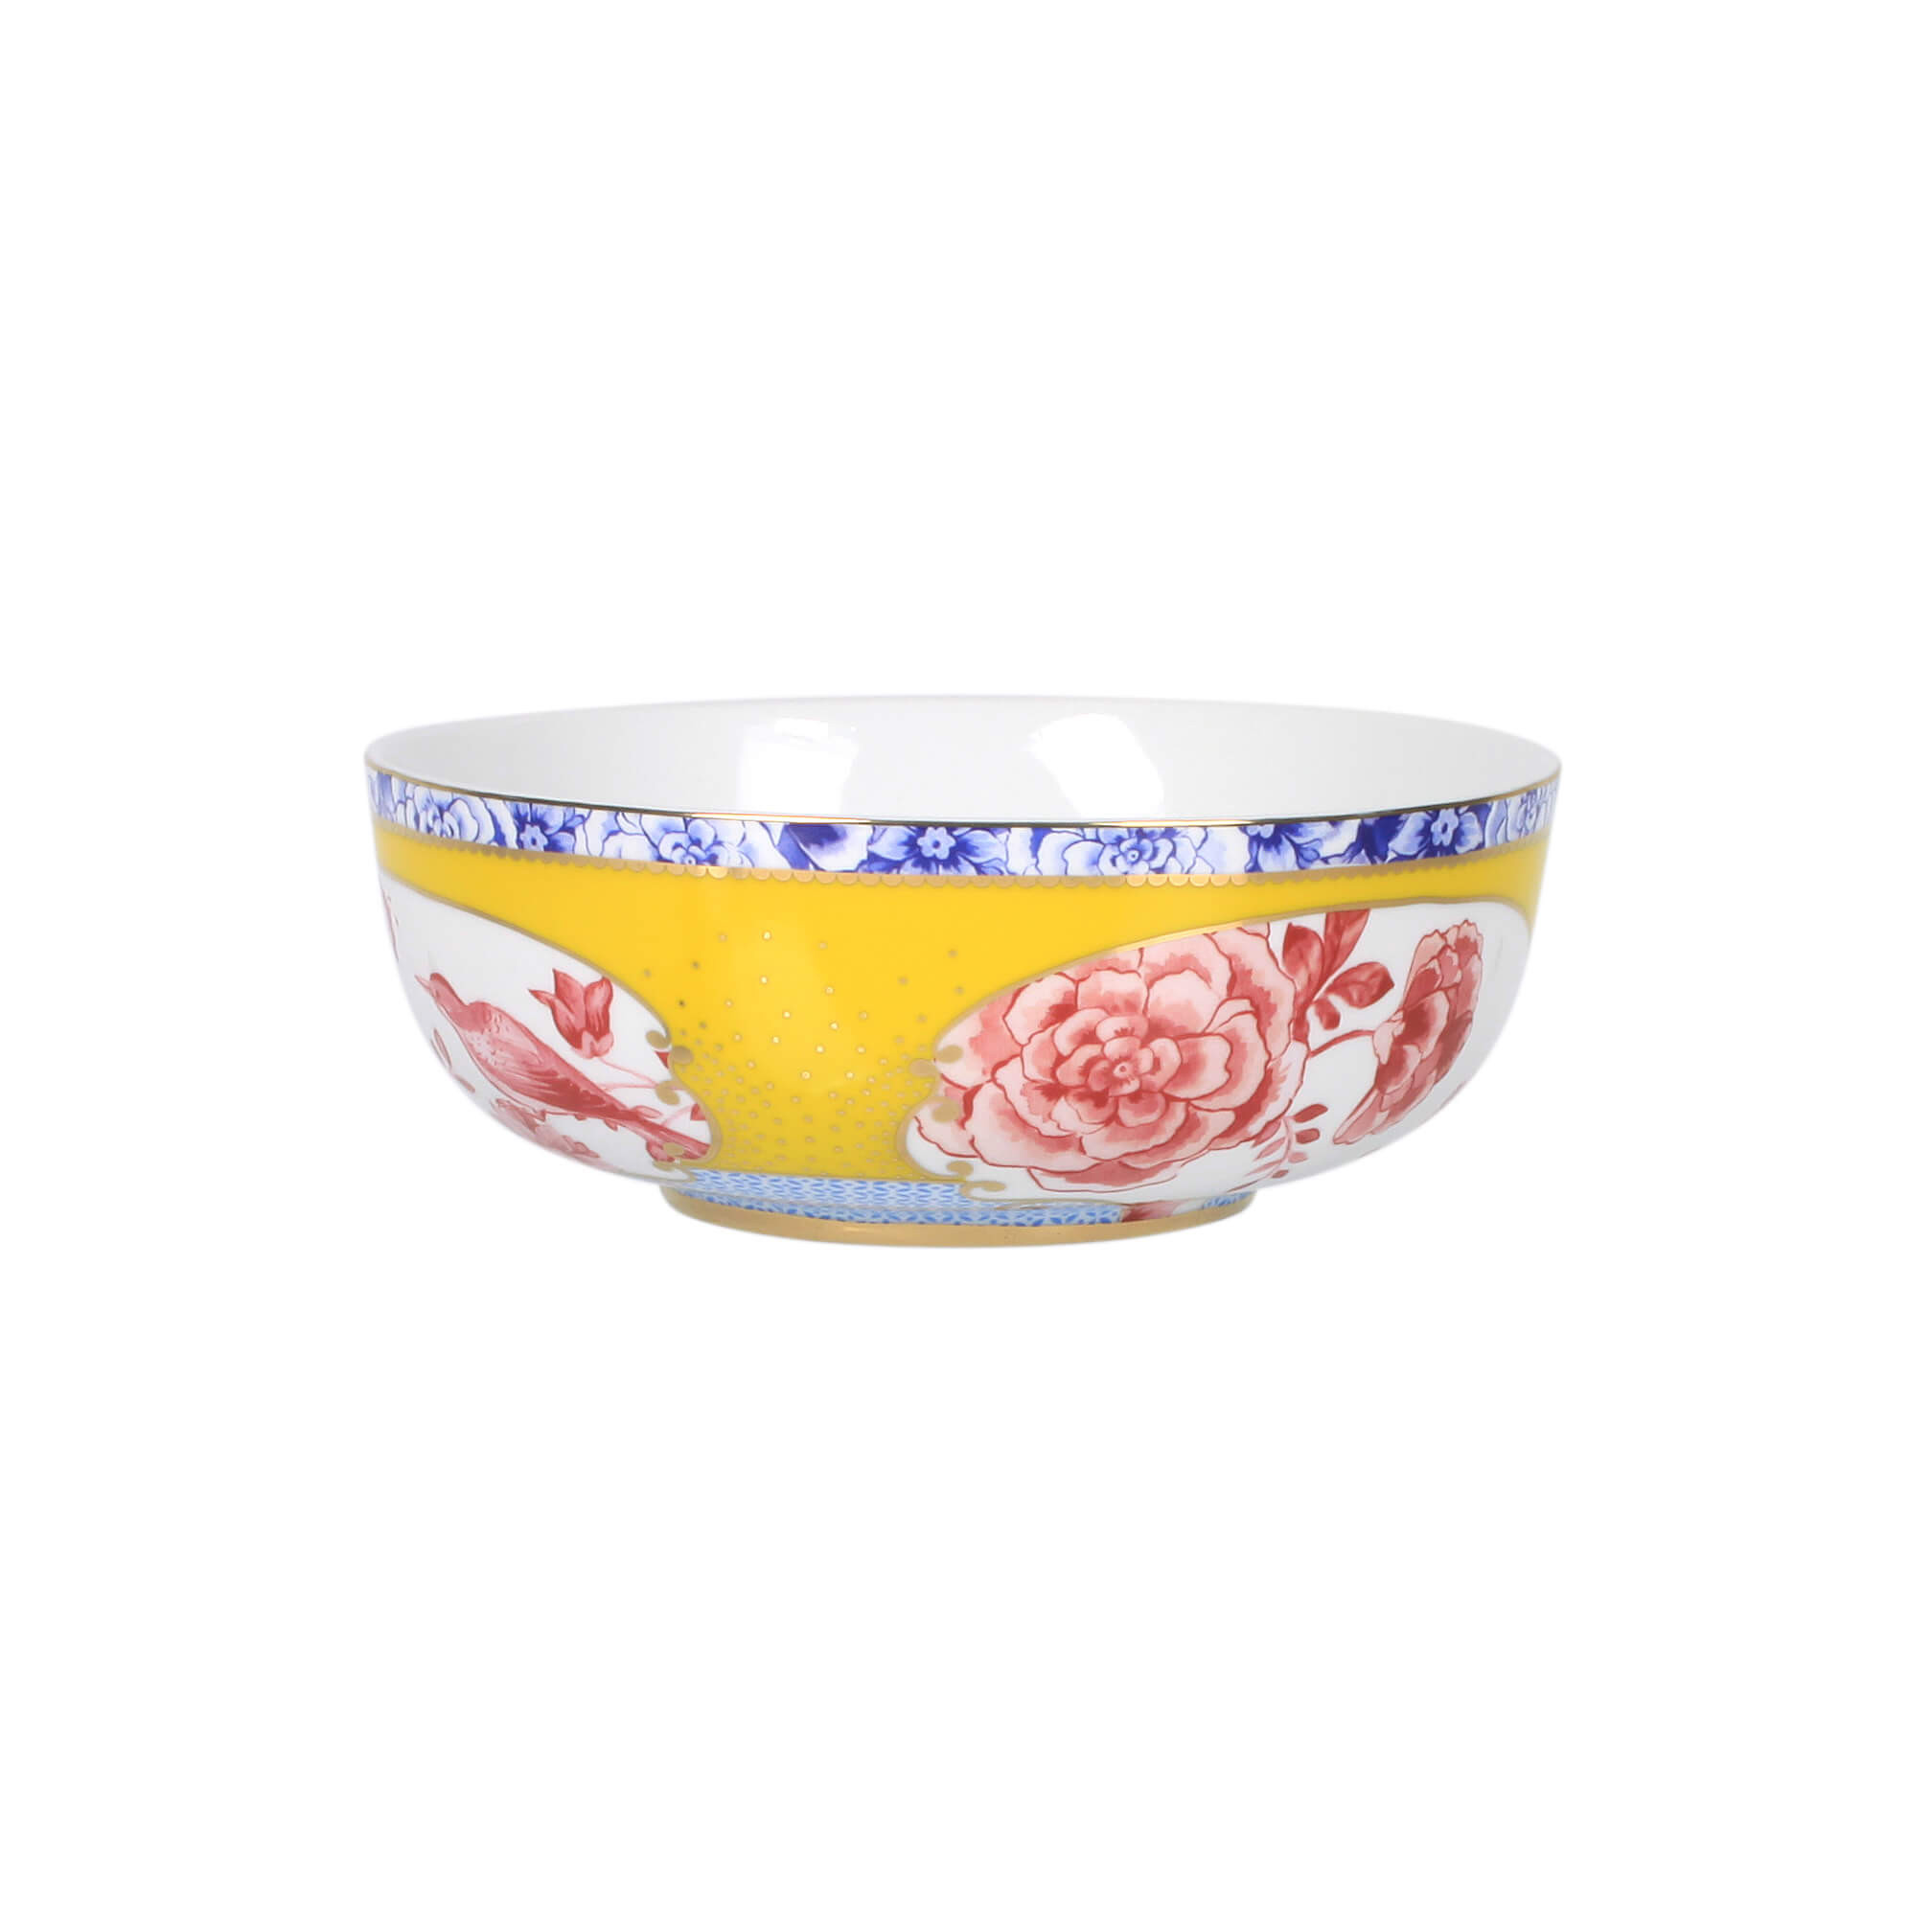 Bowl de Porcelana Amarelo com Rosa Royal 17cm - Pip Studio